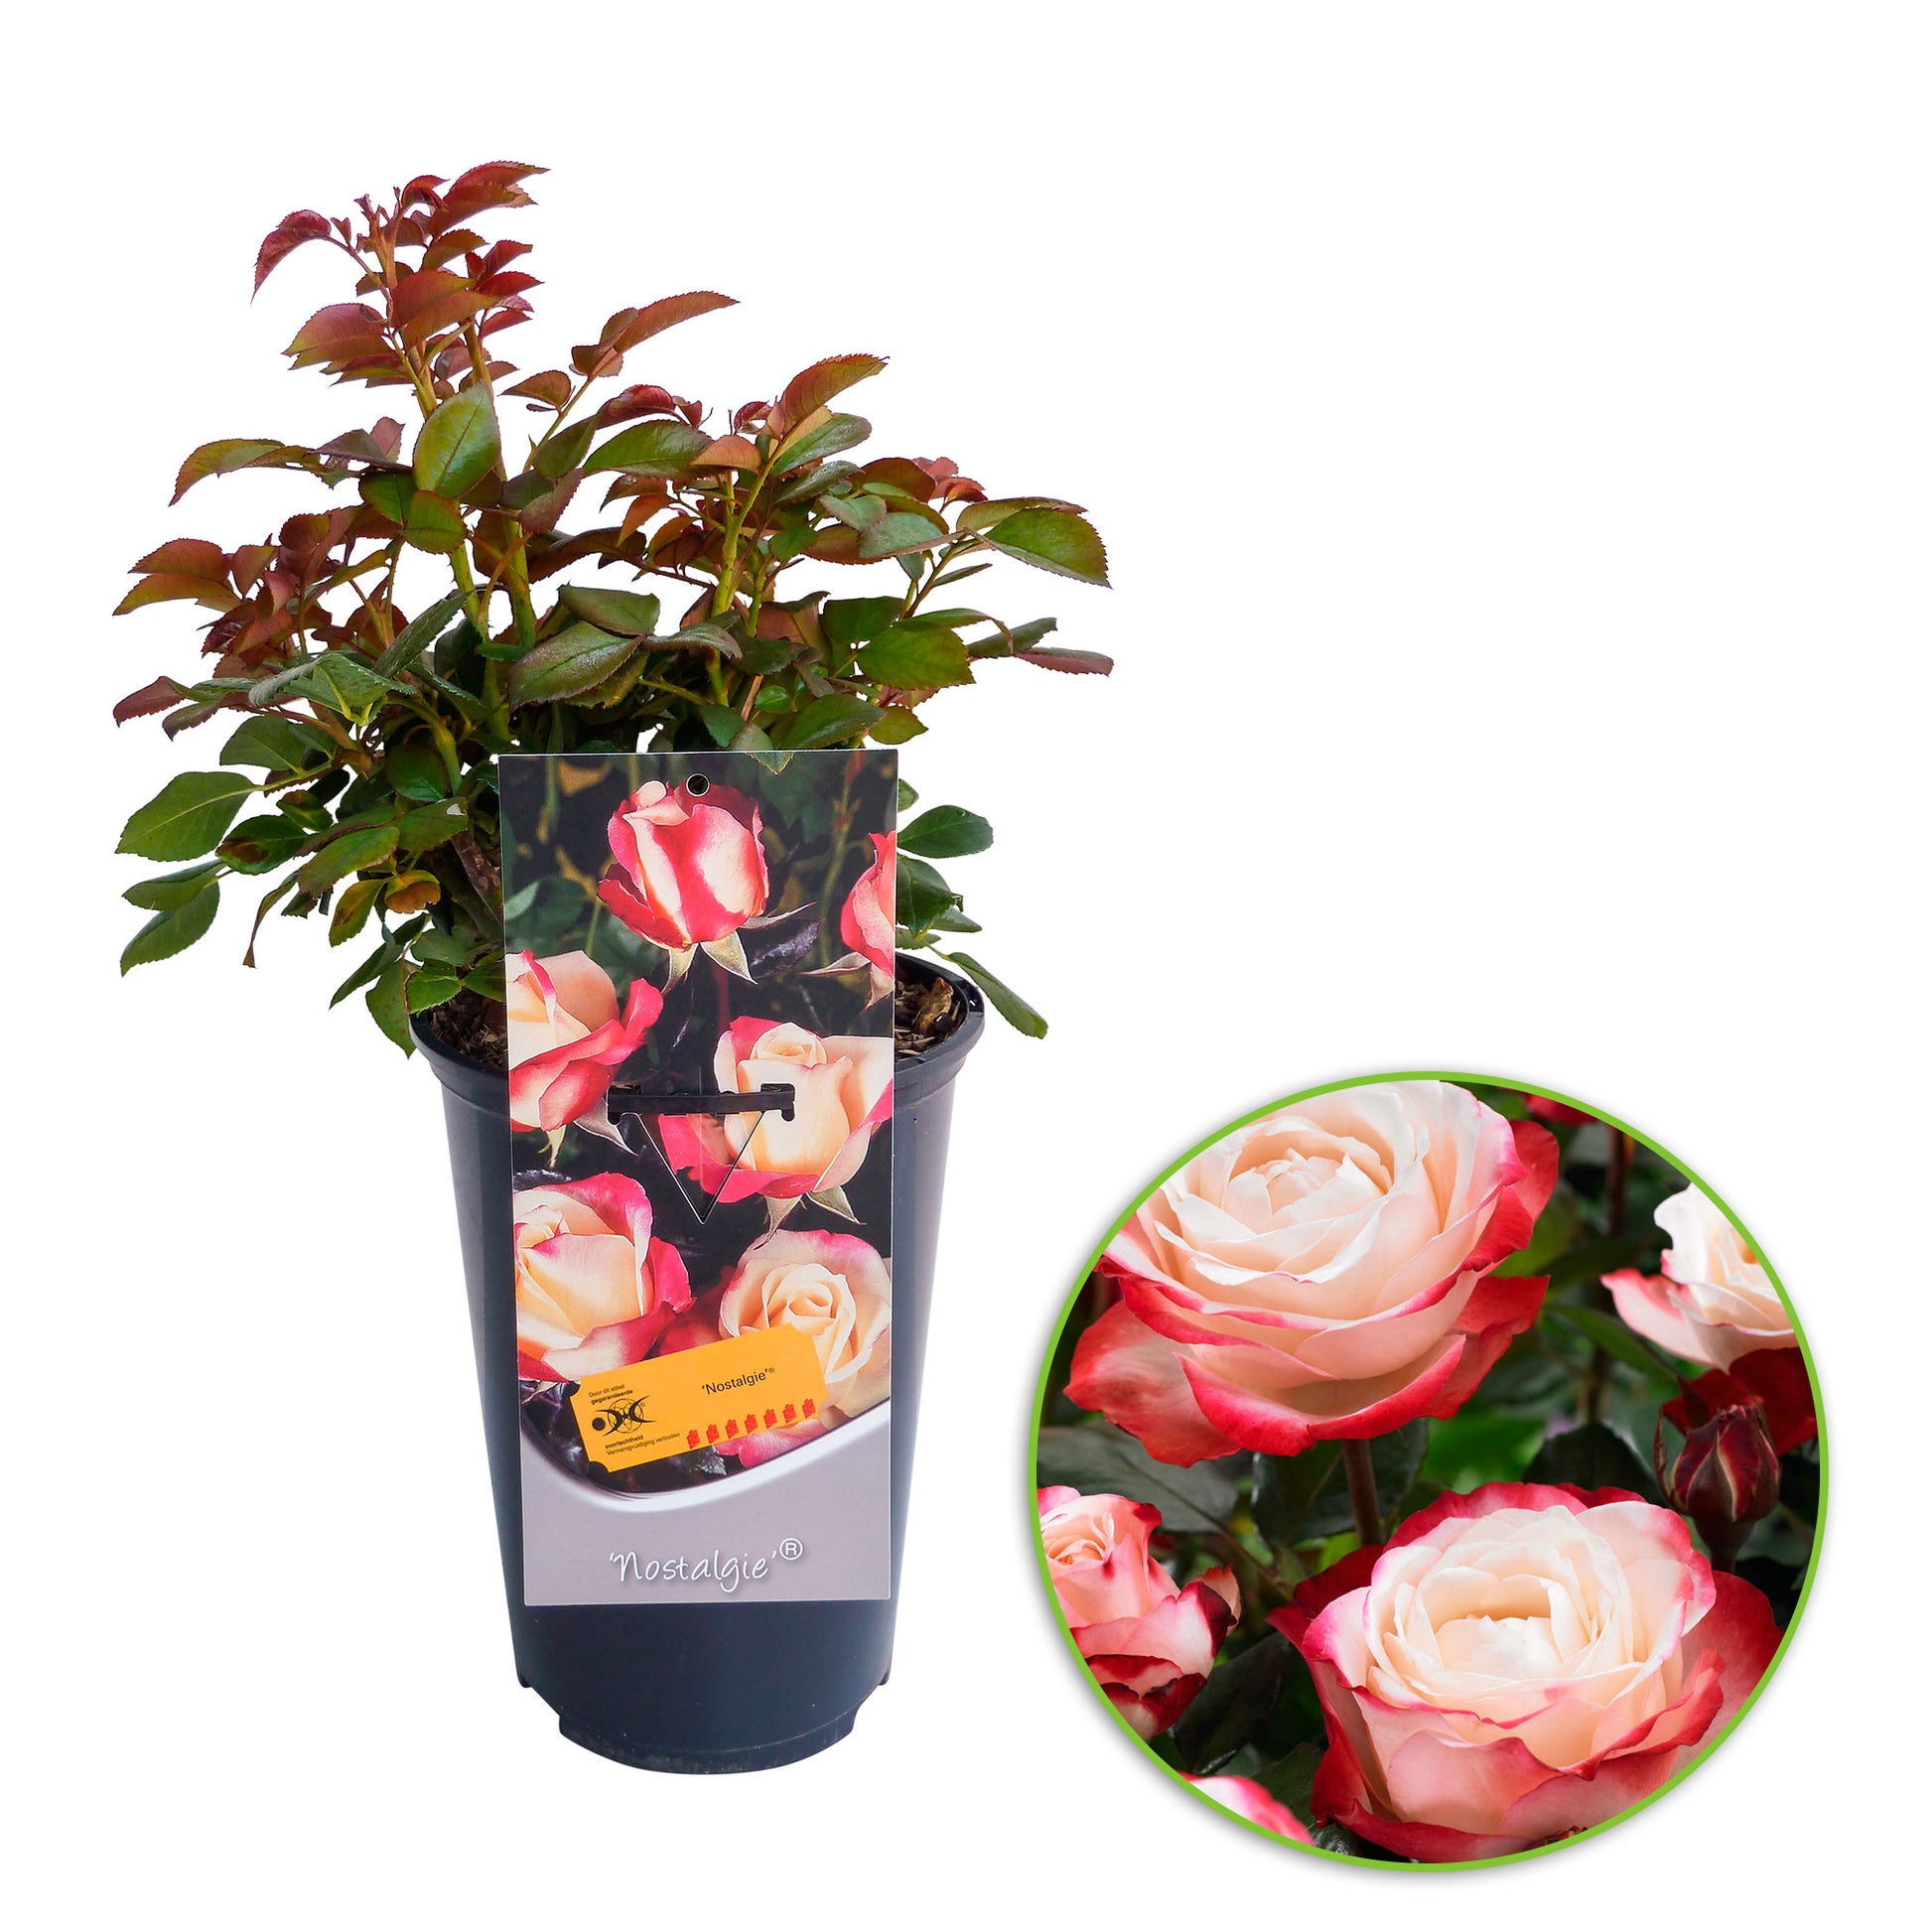 Rosa \'Nostalgie\'® Großblütige Rose Creme-Rosa - Winterhart kaufen